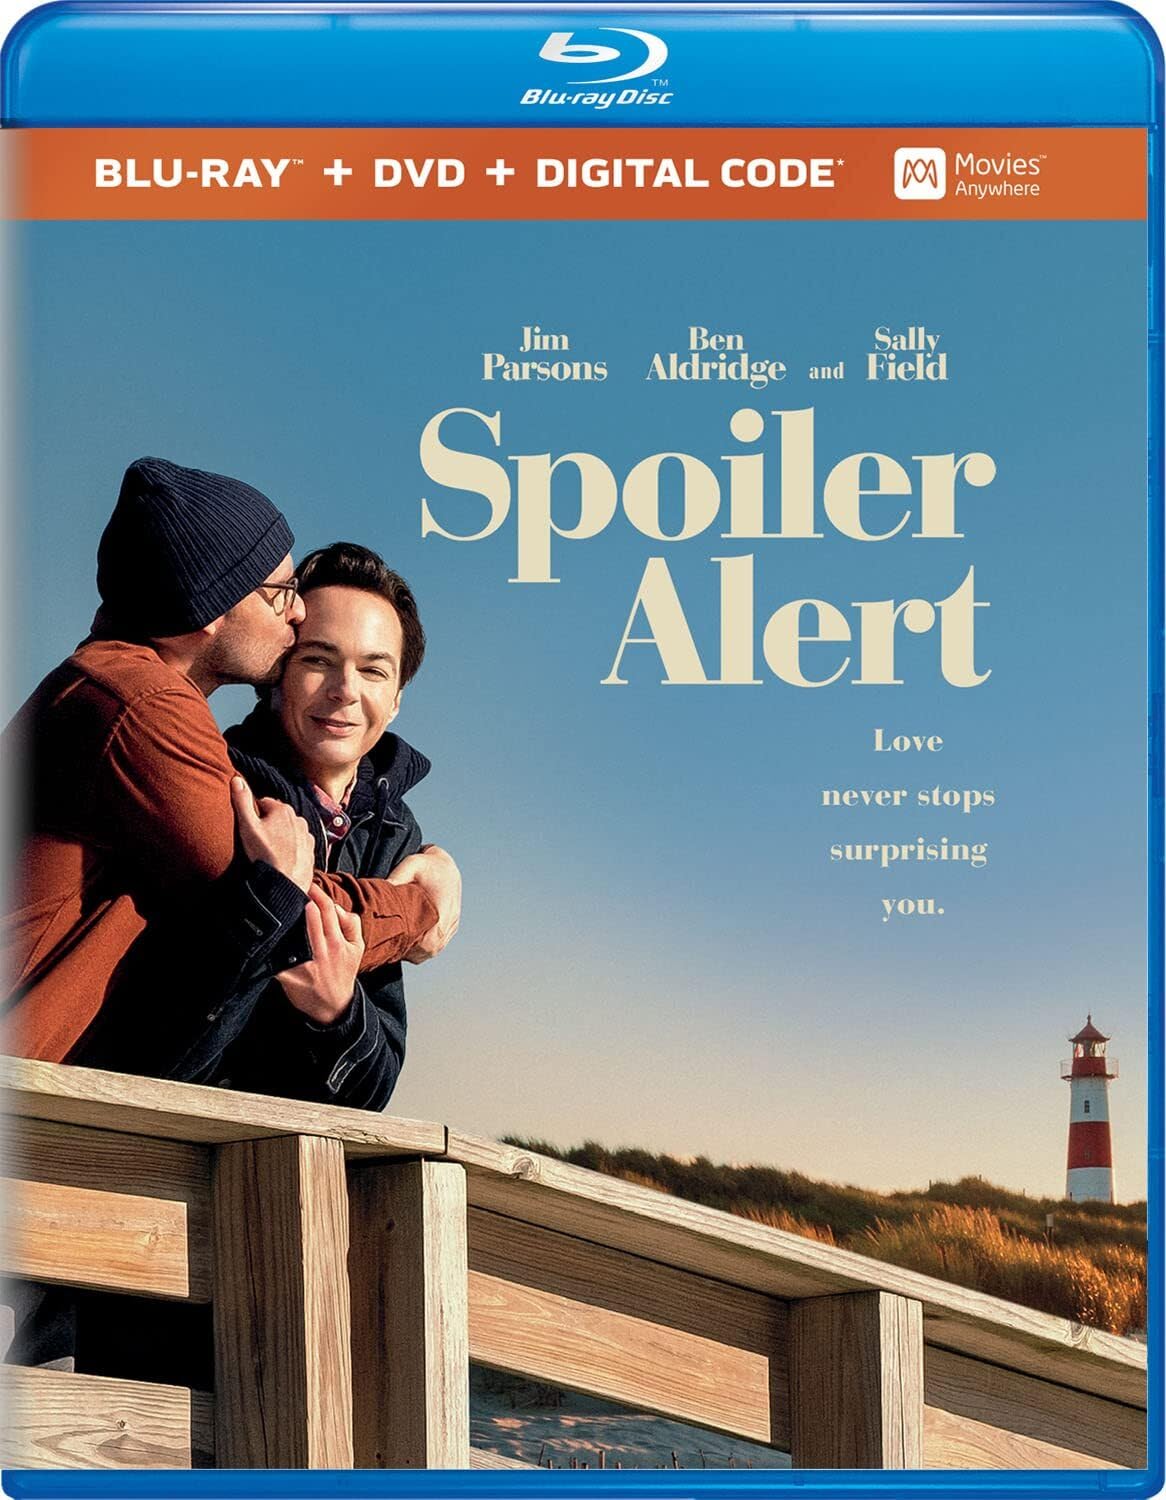 Spoiler Alert HD Digital Code (Movies Anywhere)